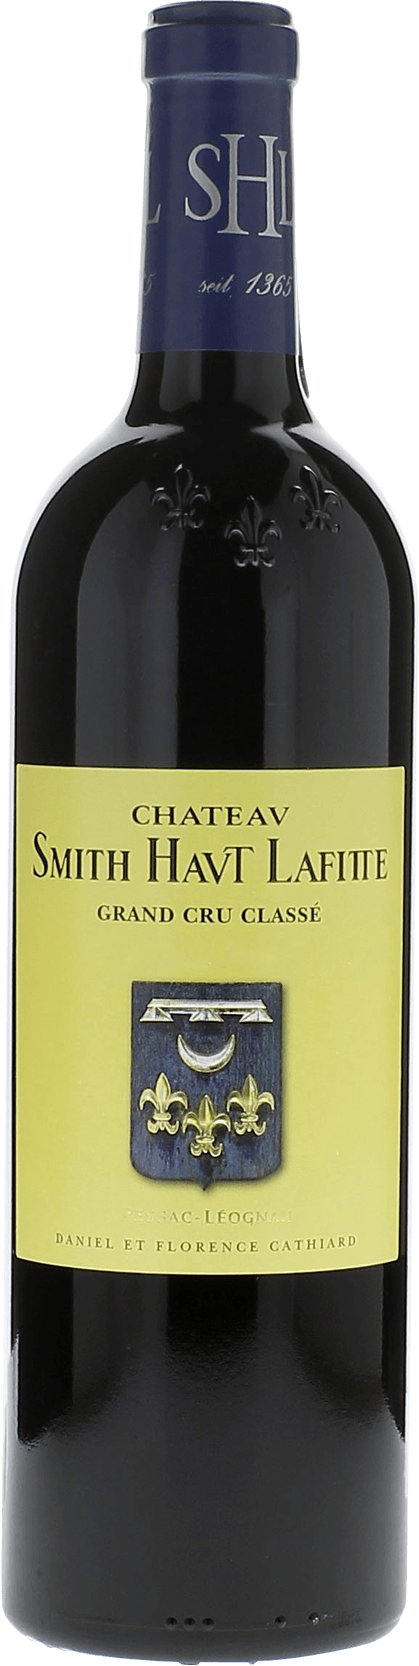 Smith haut lafitte 2002 Grand Cru Class Graves, Bordeaux rouge